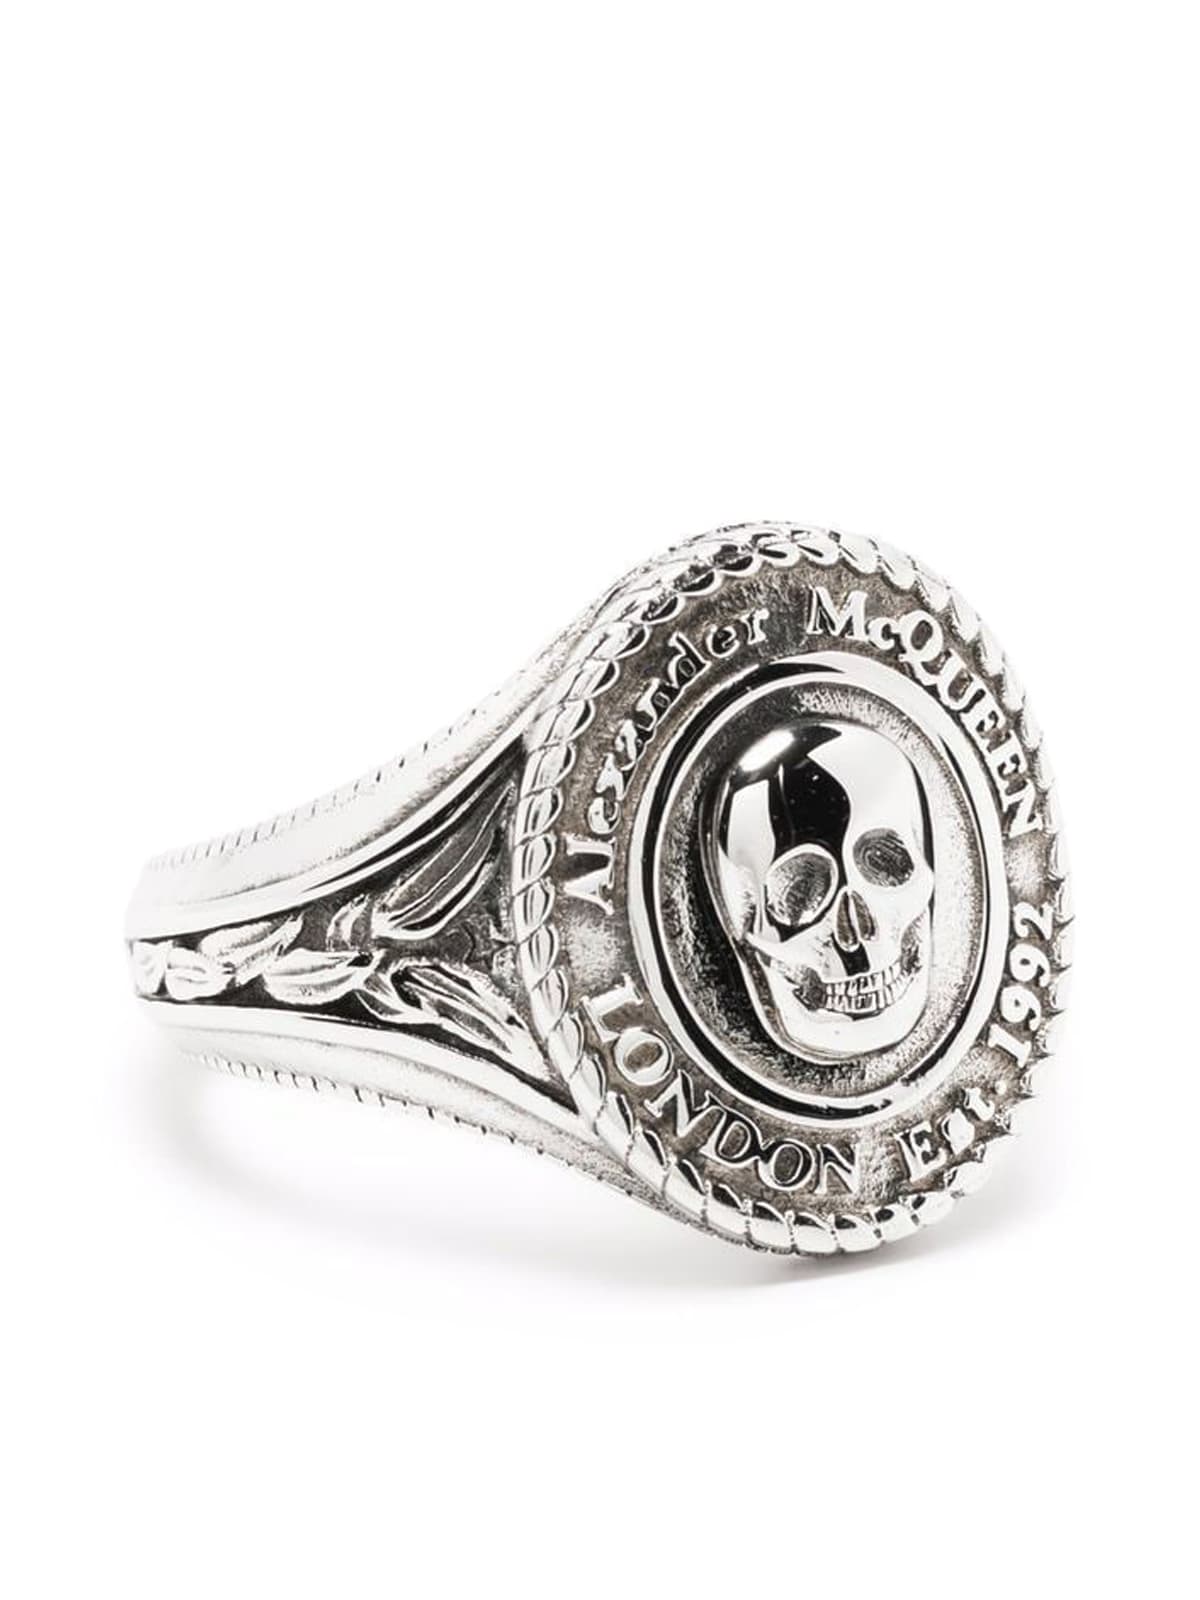 Alexander McQueen Medallion Skull Ring